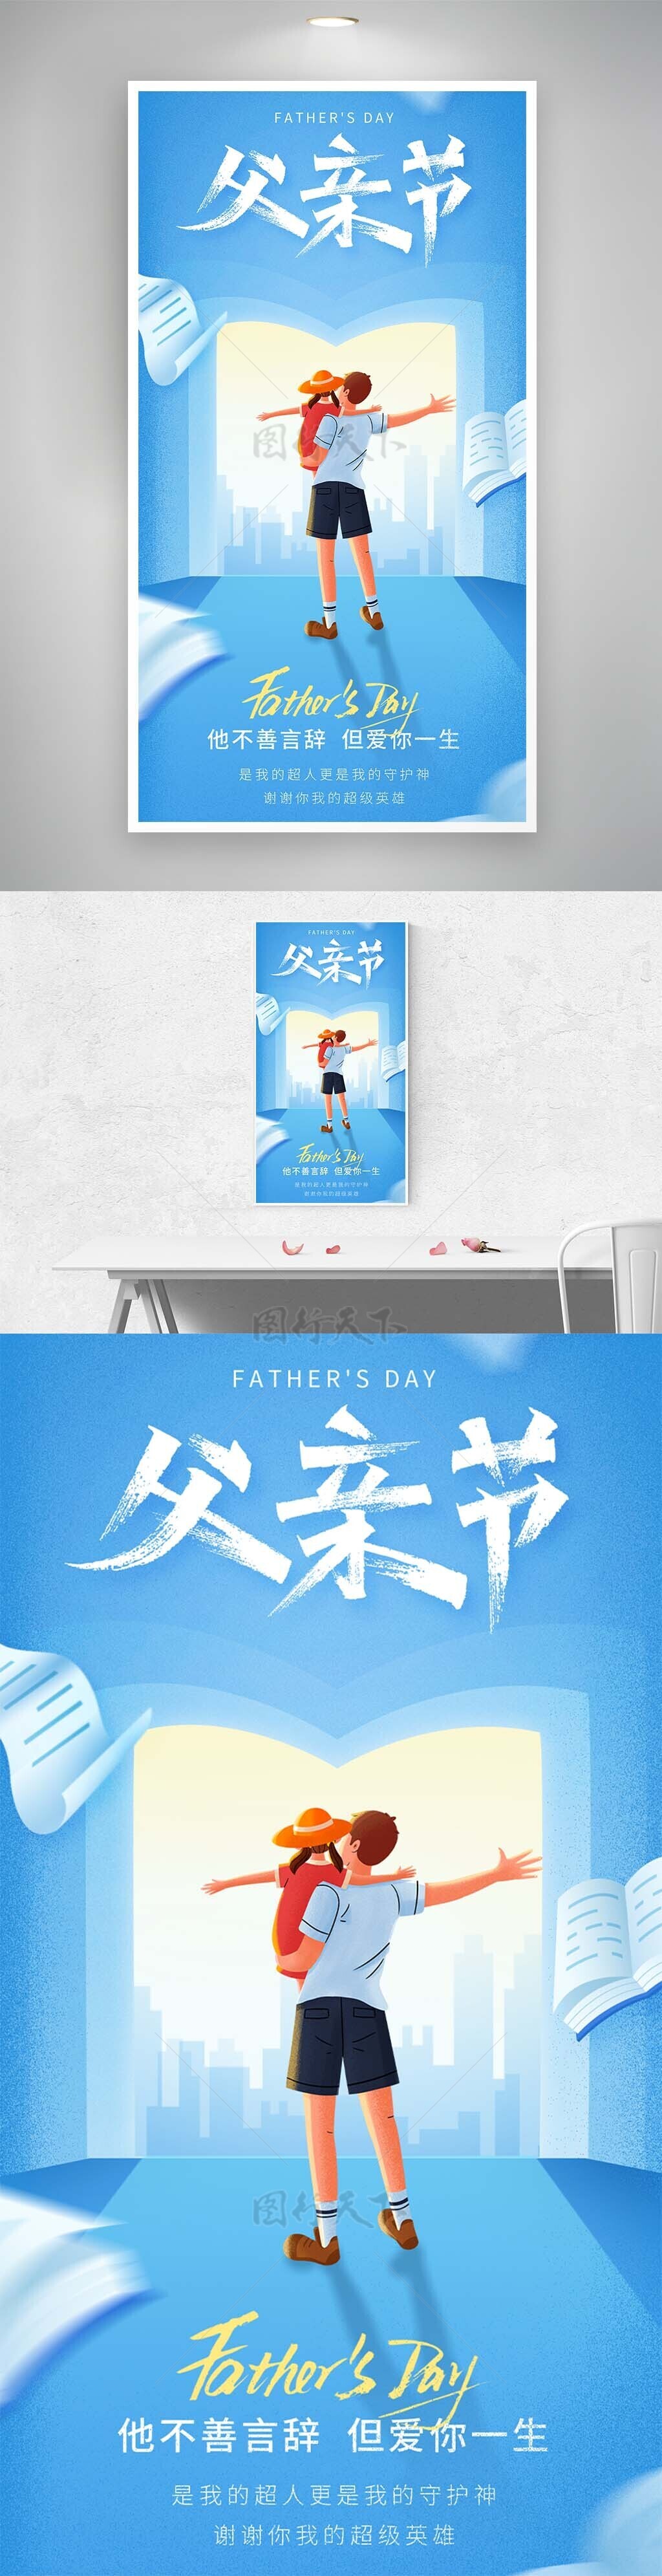 父亲节手绘蓝色温馨背影主题海报设计